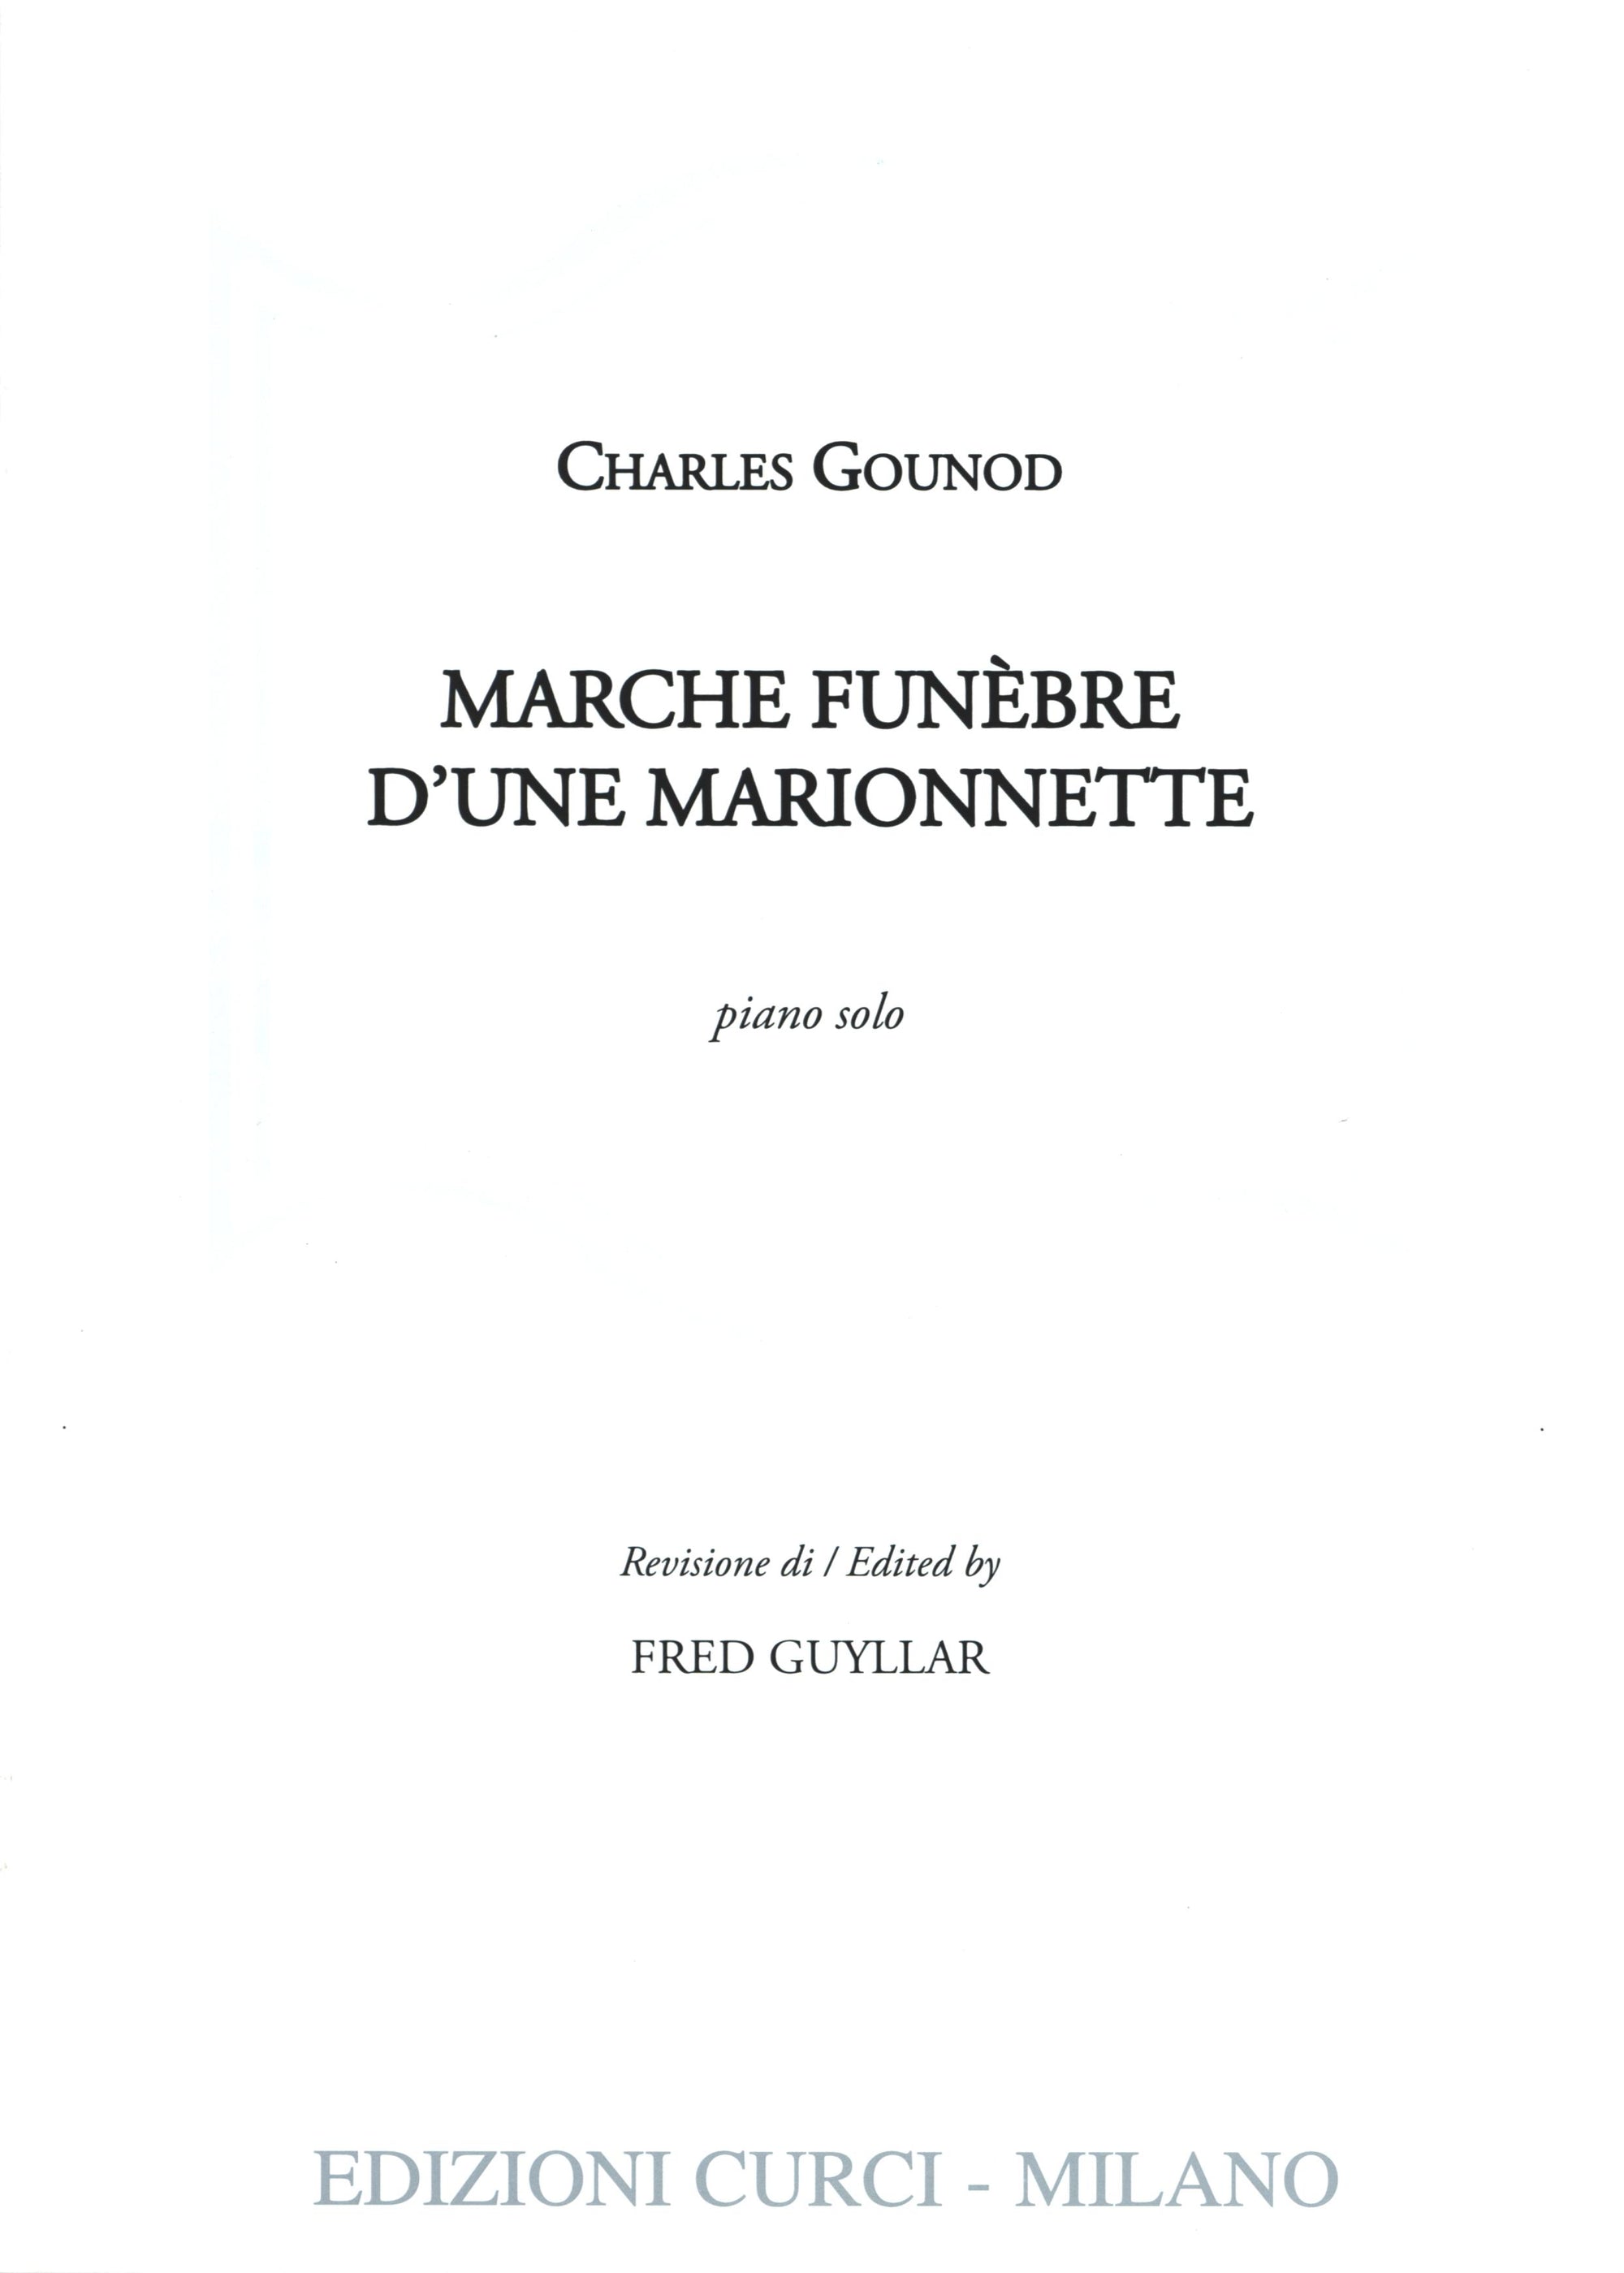 Gounod: Marche funèbre d'une marionnette